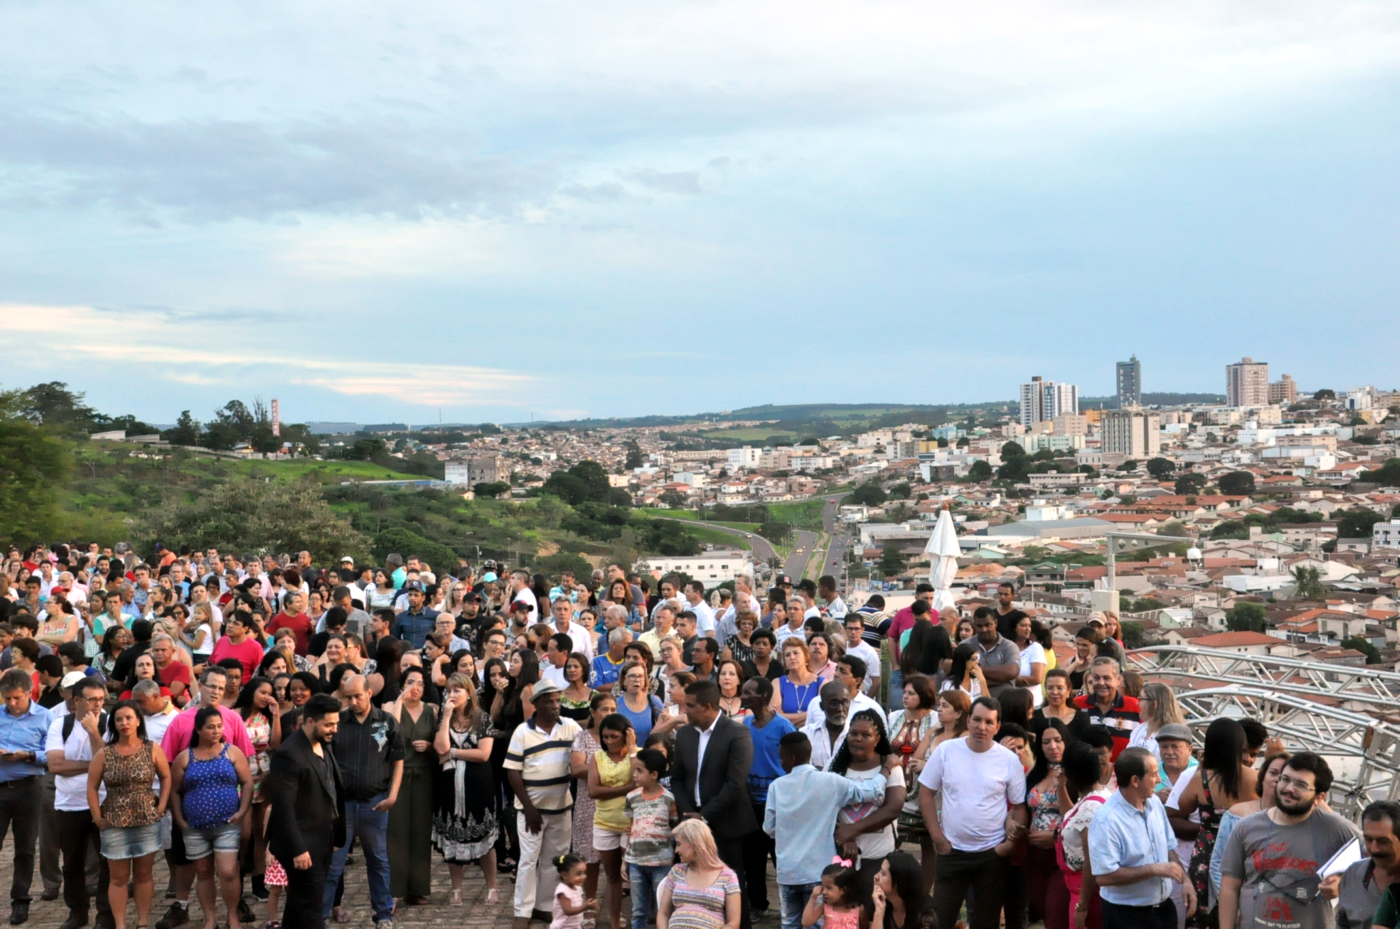 Reinauguração do Parque do Cristo leva mais de 20 mil pessoas ao evento